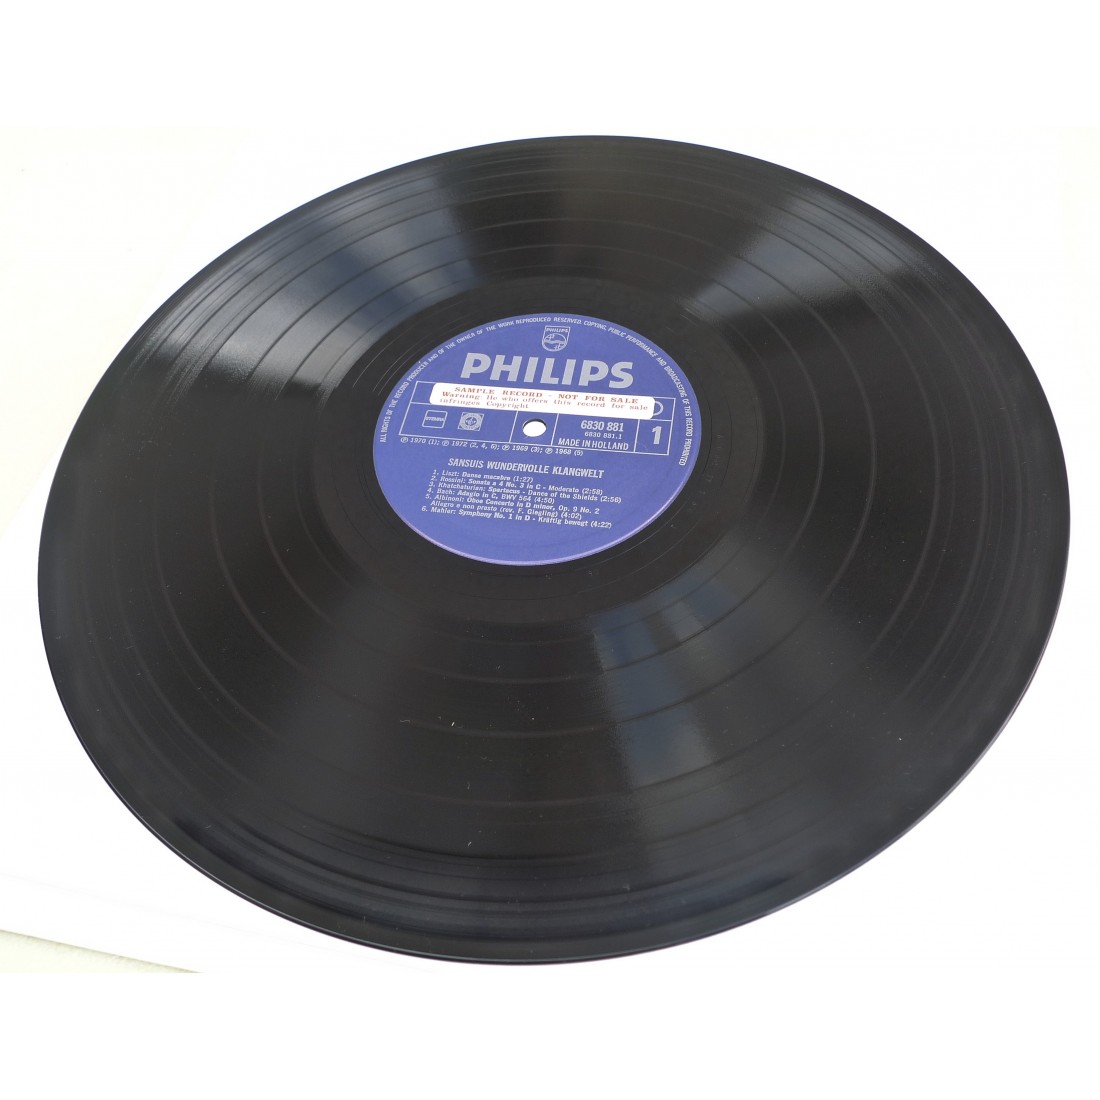 Disque vinyle LP 33T Sansui Test Promo hi-fi 1972
